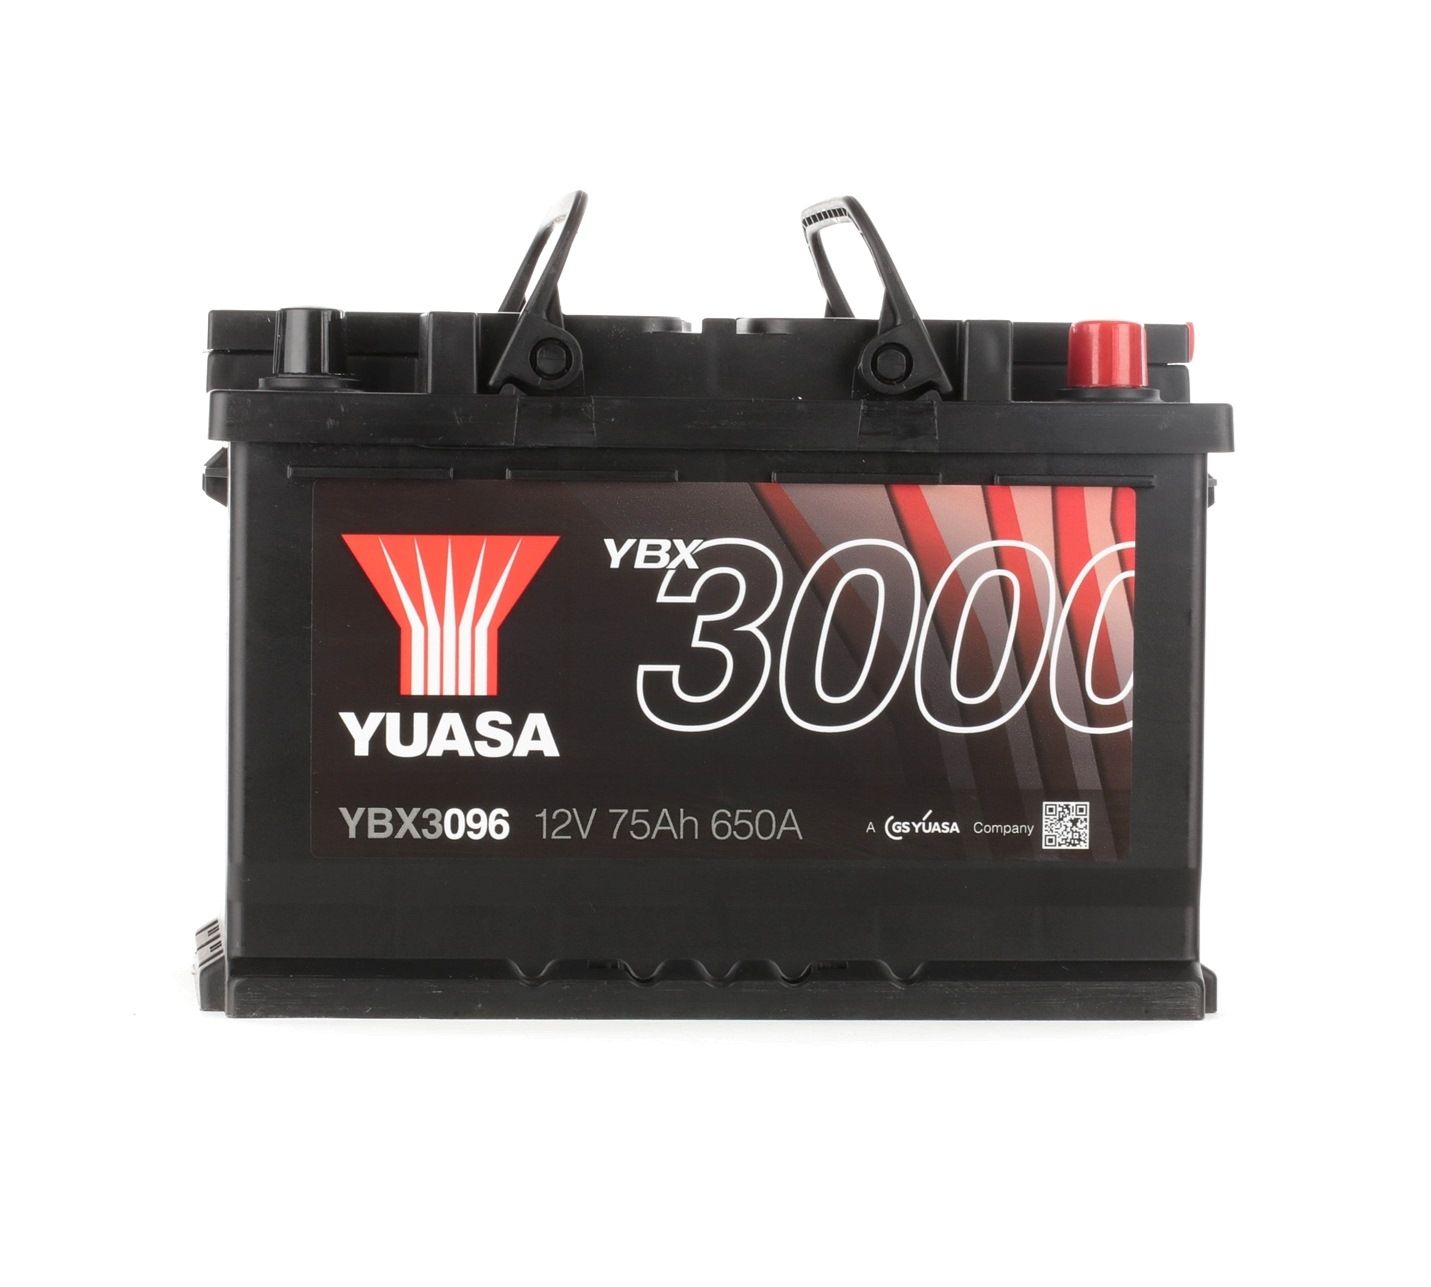 YUASA YBX3000 YBX3096 Batterie 12V 76Ah 680A mit Handgriffen, mit Ladezustandsanzeige, Bleiakkumulator